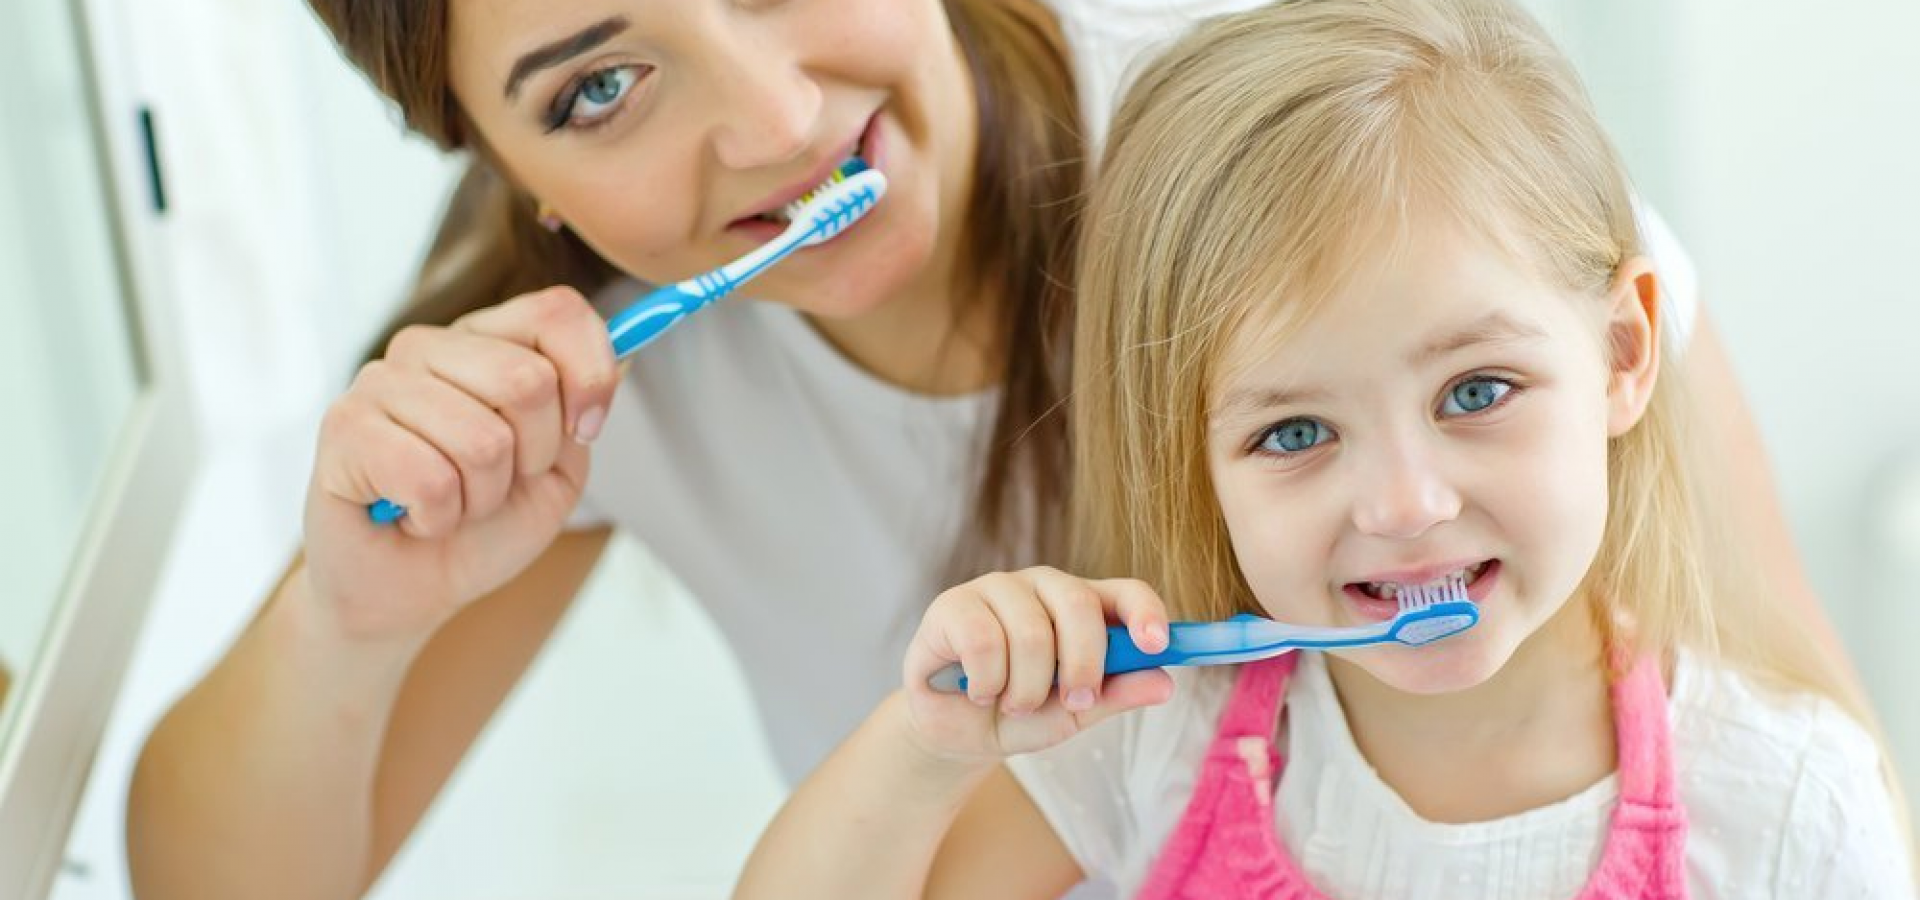 1 гигиена полости рта. Гигиена полости рта. Гигиена зубов для детей. Гигиена полости рта для детей дошкольного возраста. Чистим зубы!.